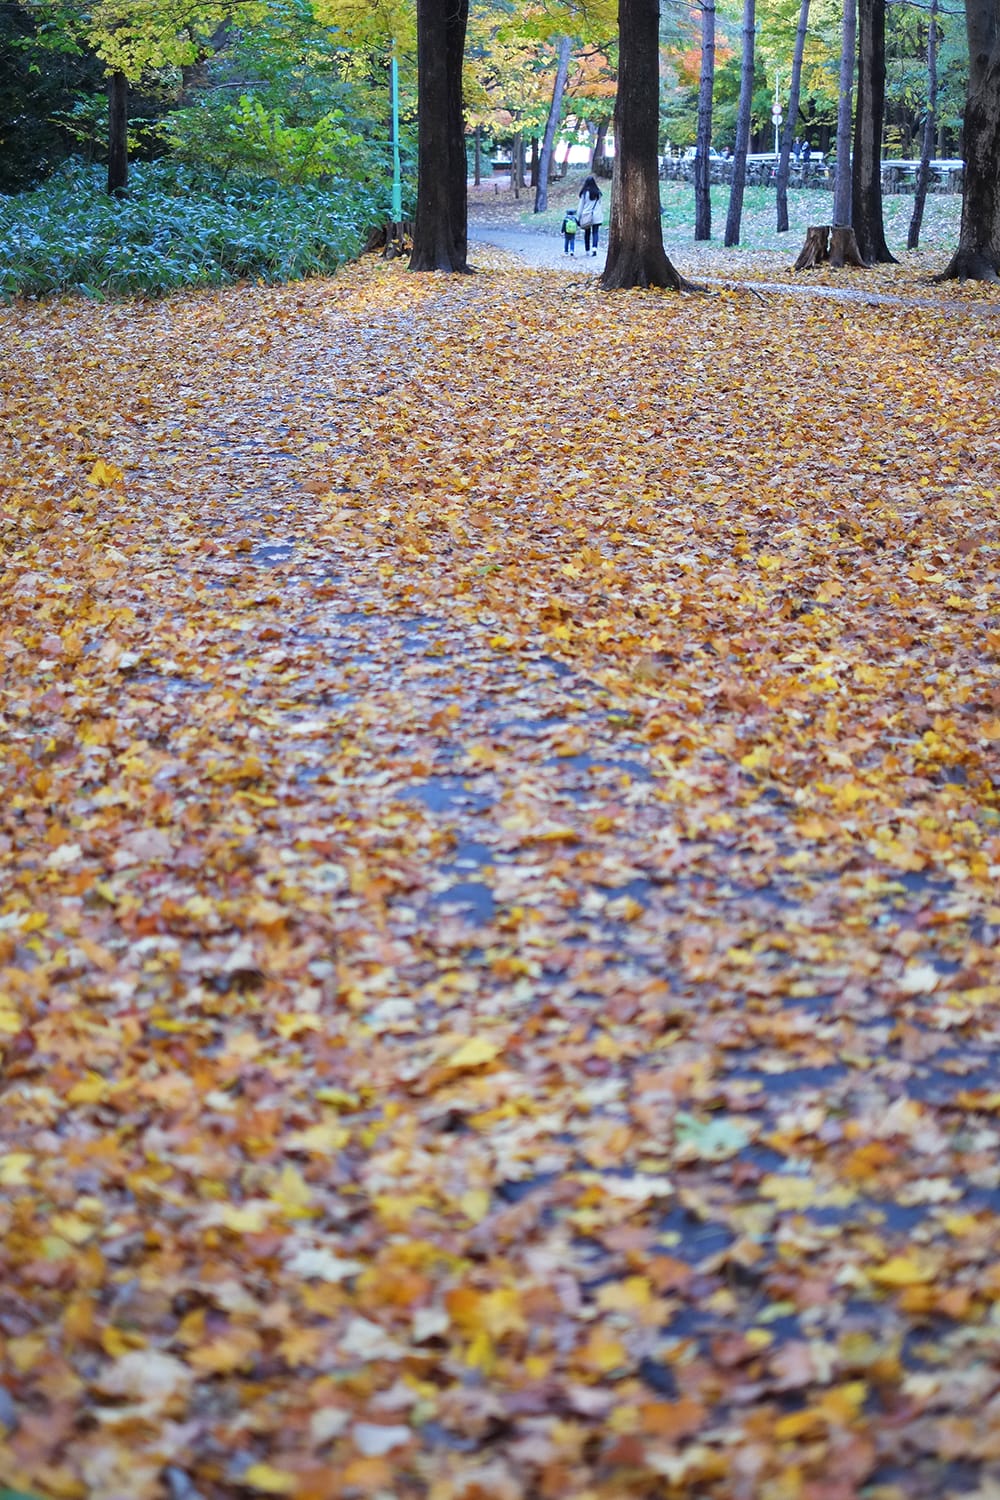 カエデの落葉と円山公園の遊歩道